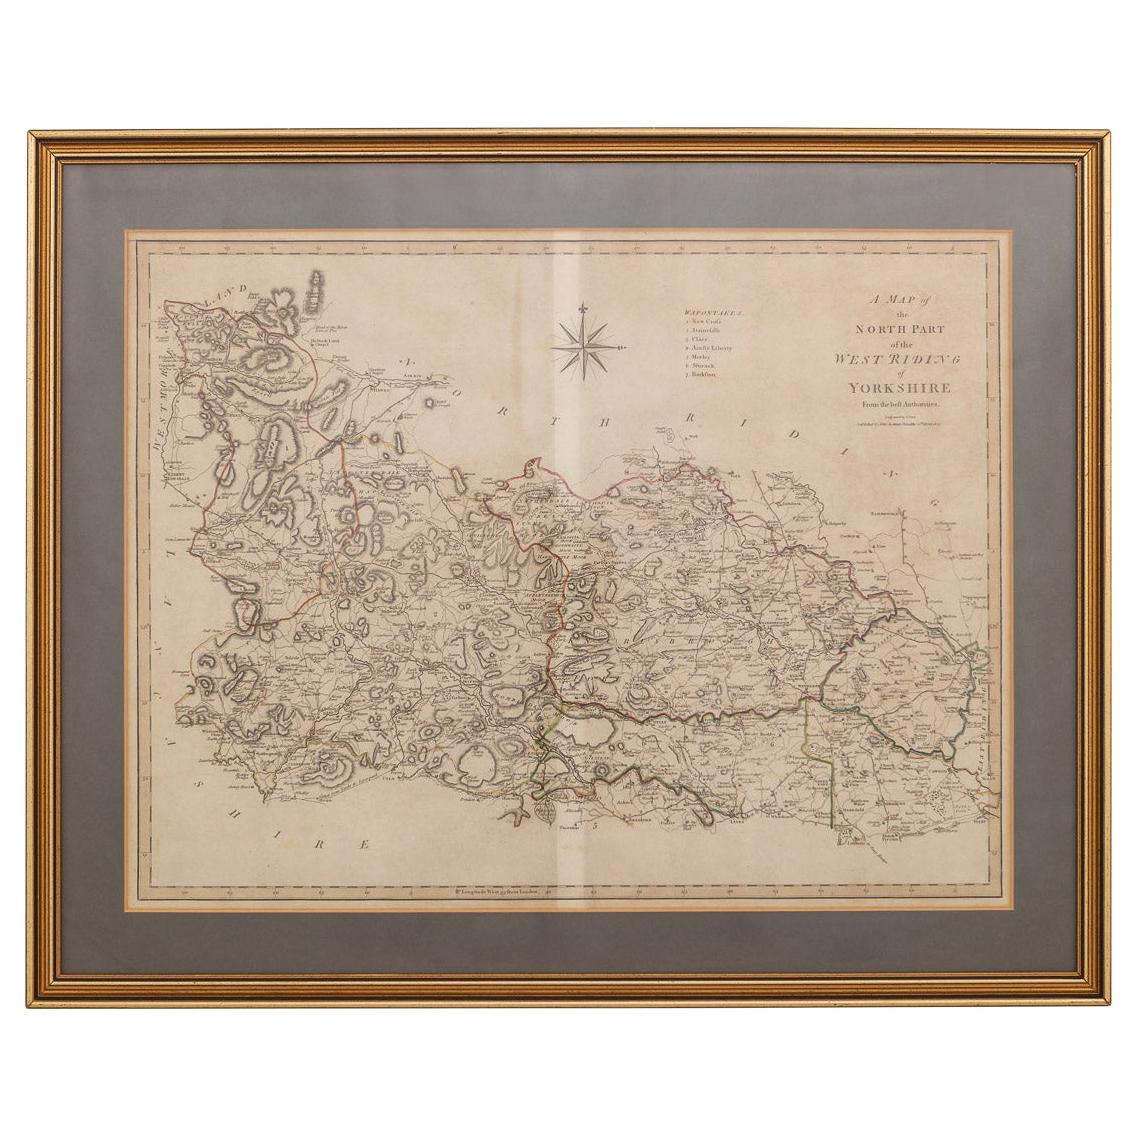 19. Jahrhundert John Cary Karte des Norden Teils von West Riding of Yorkshire, um 1805